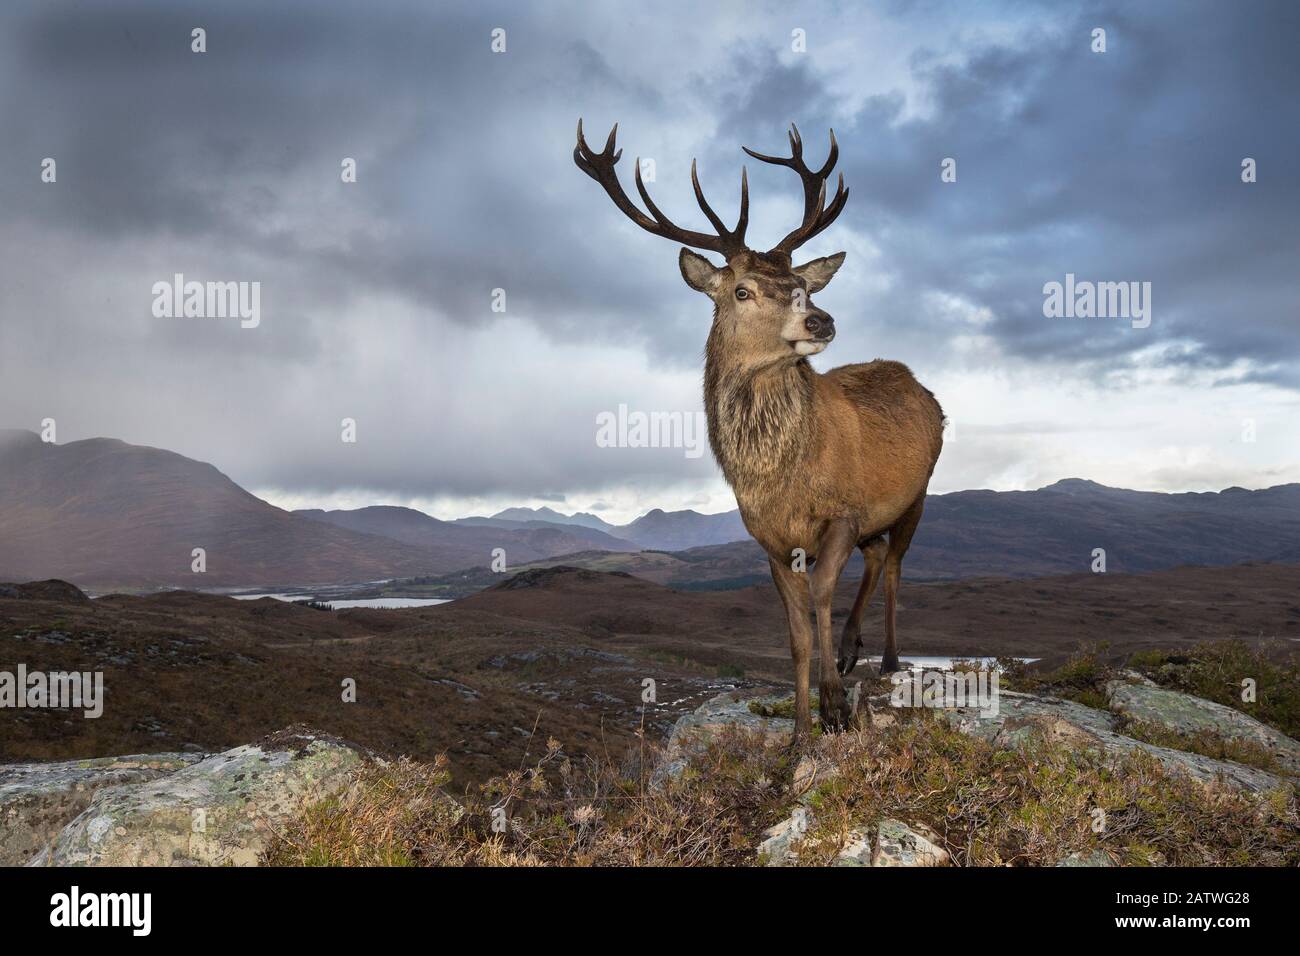 Red deer (Cervus elaphus) stag in upland landscape. Lochcarron, Highlands, Scotland, UK. Stock Photo